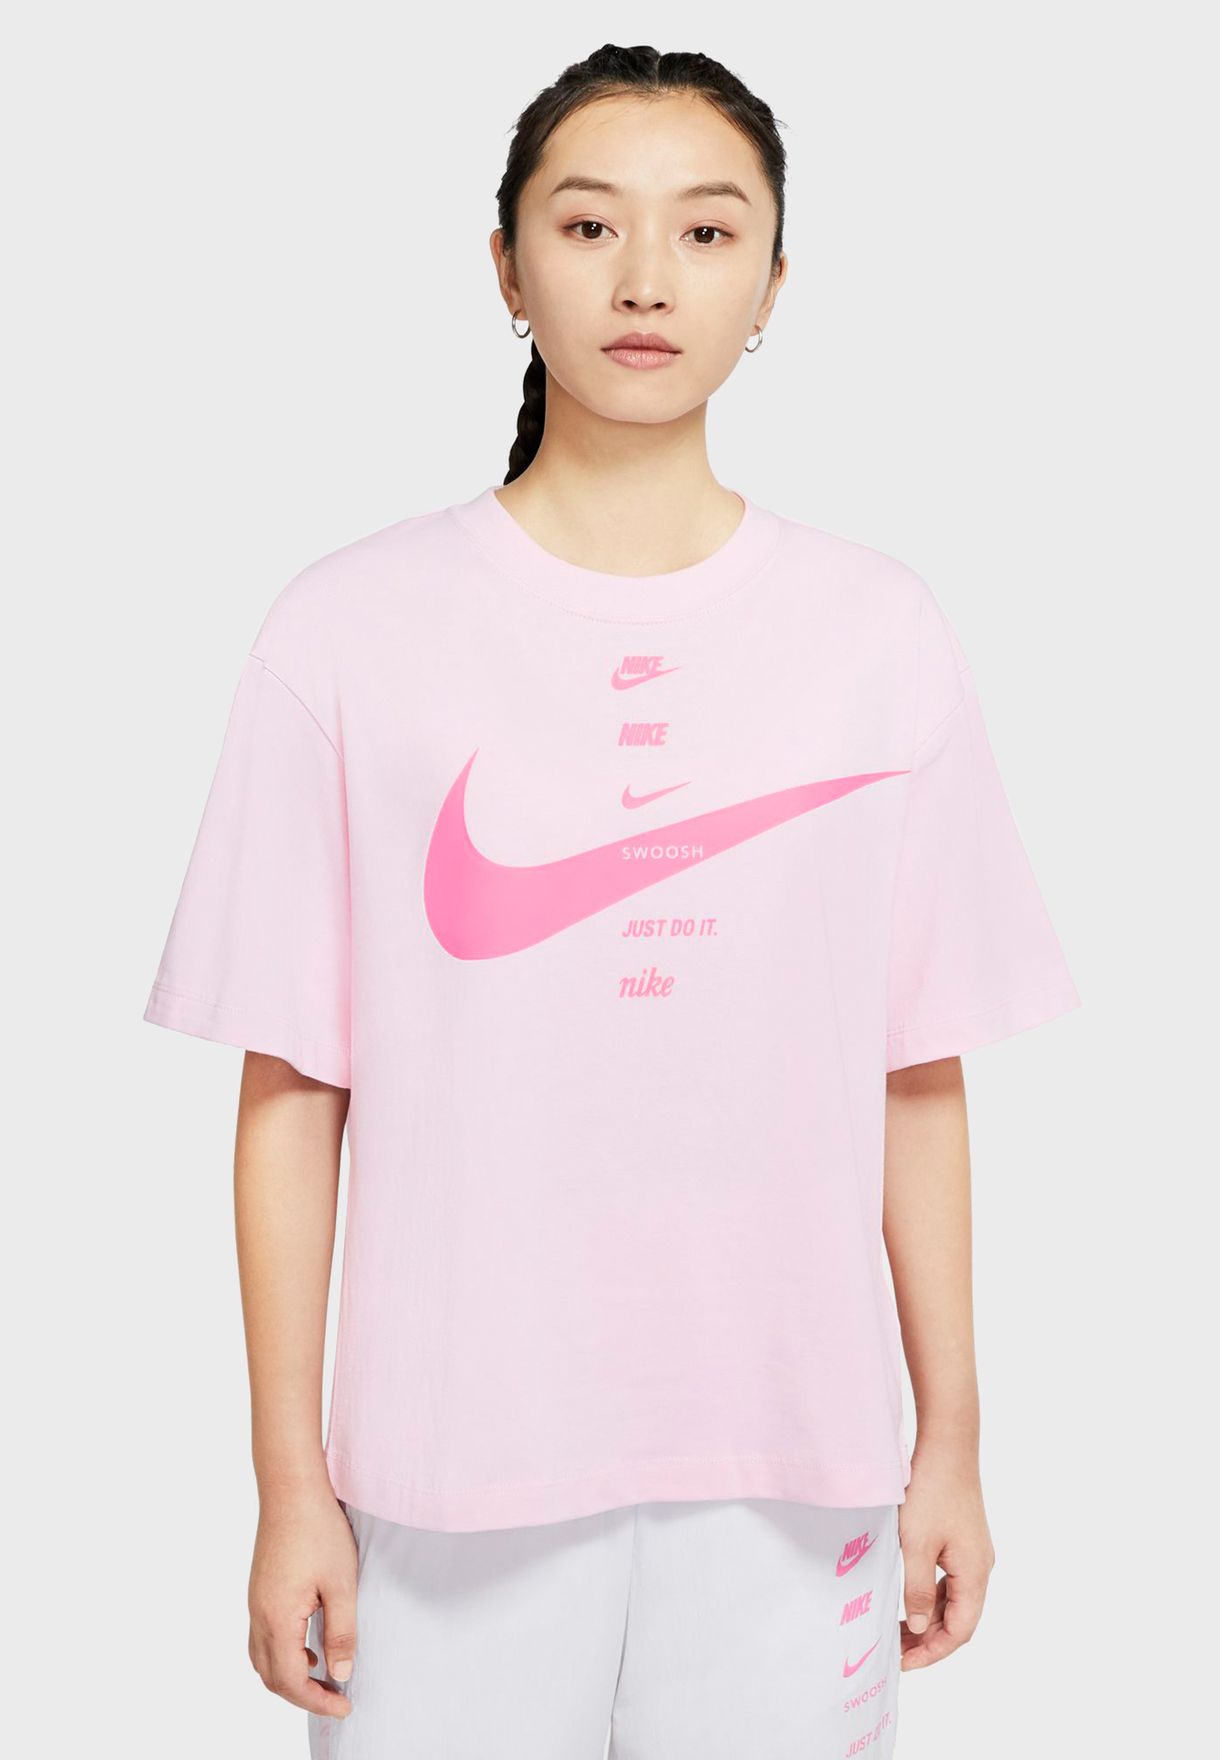 nike t shirt women's pink